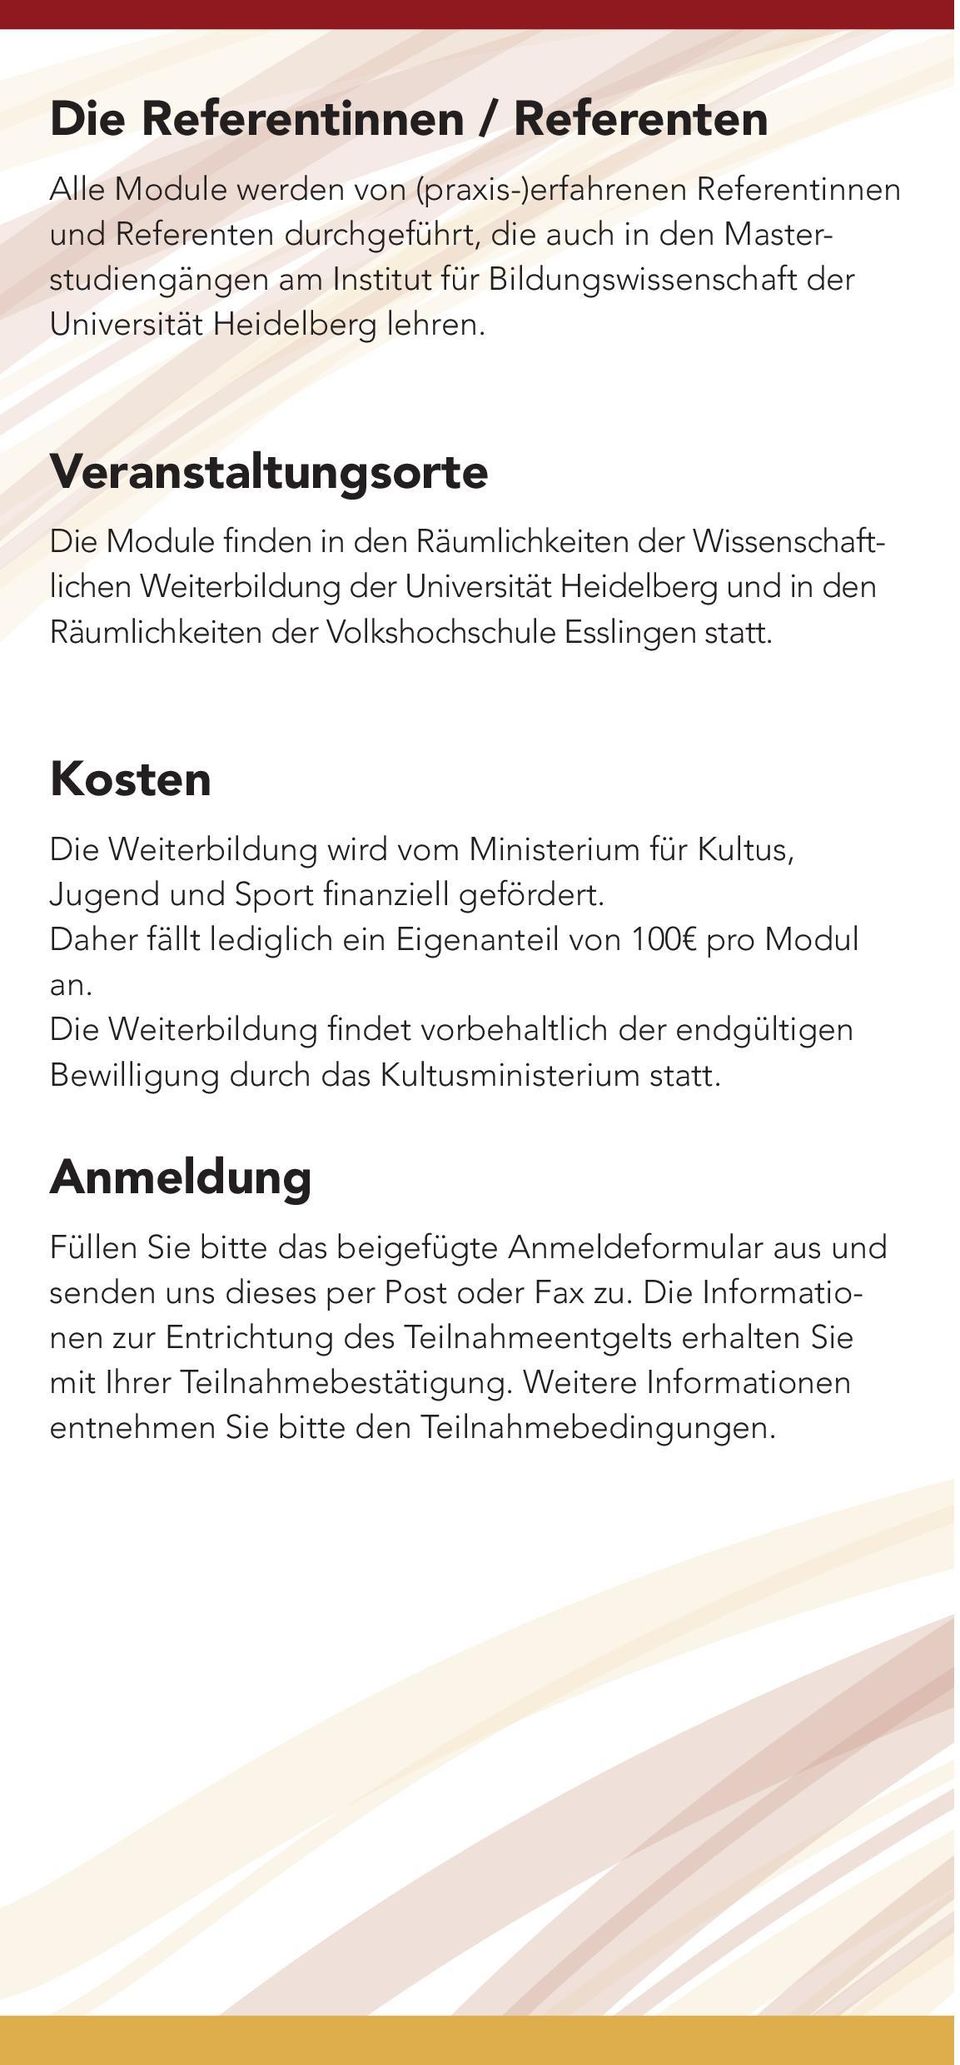 Veranstaltungsorte Die Module finden in den Räumlichkeiten der Wissenschaftlichen Weiterbildung der Universität Heidelberg und in den Räumlichkeiten der Volkshochschule Esslingen statt.